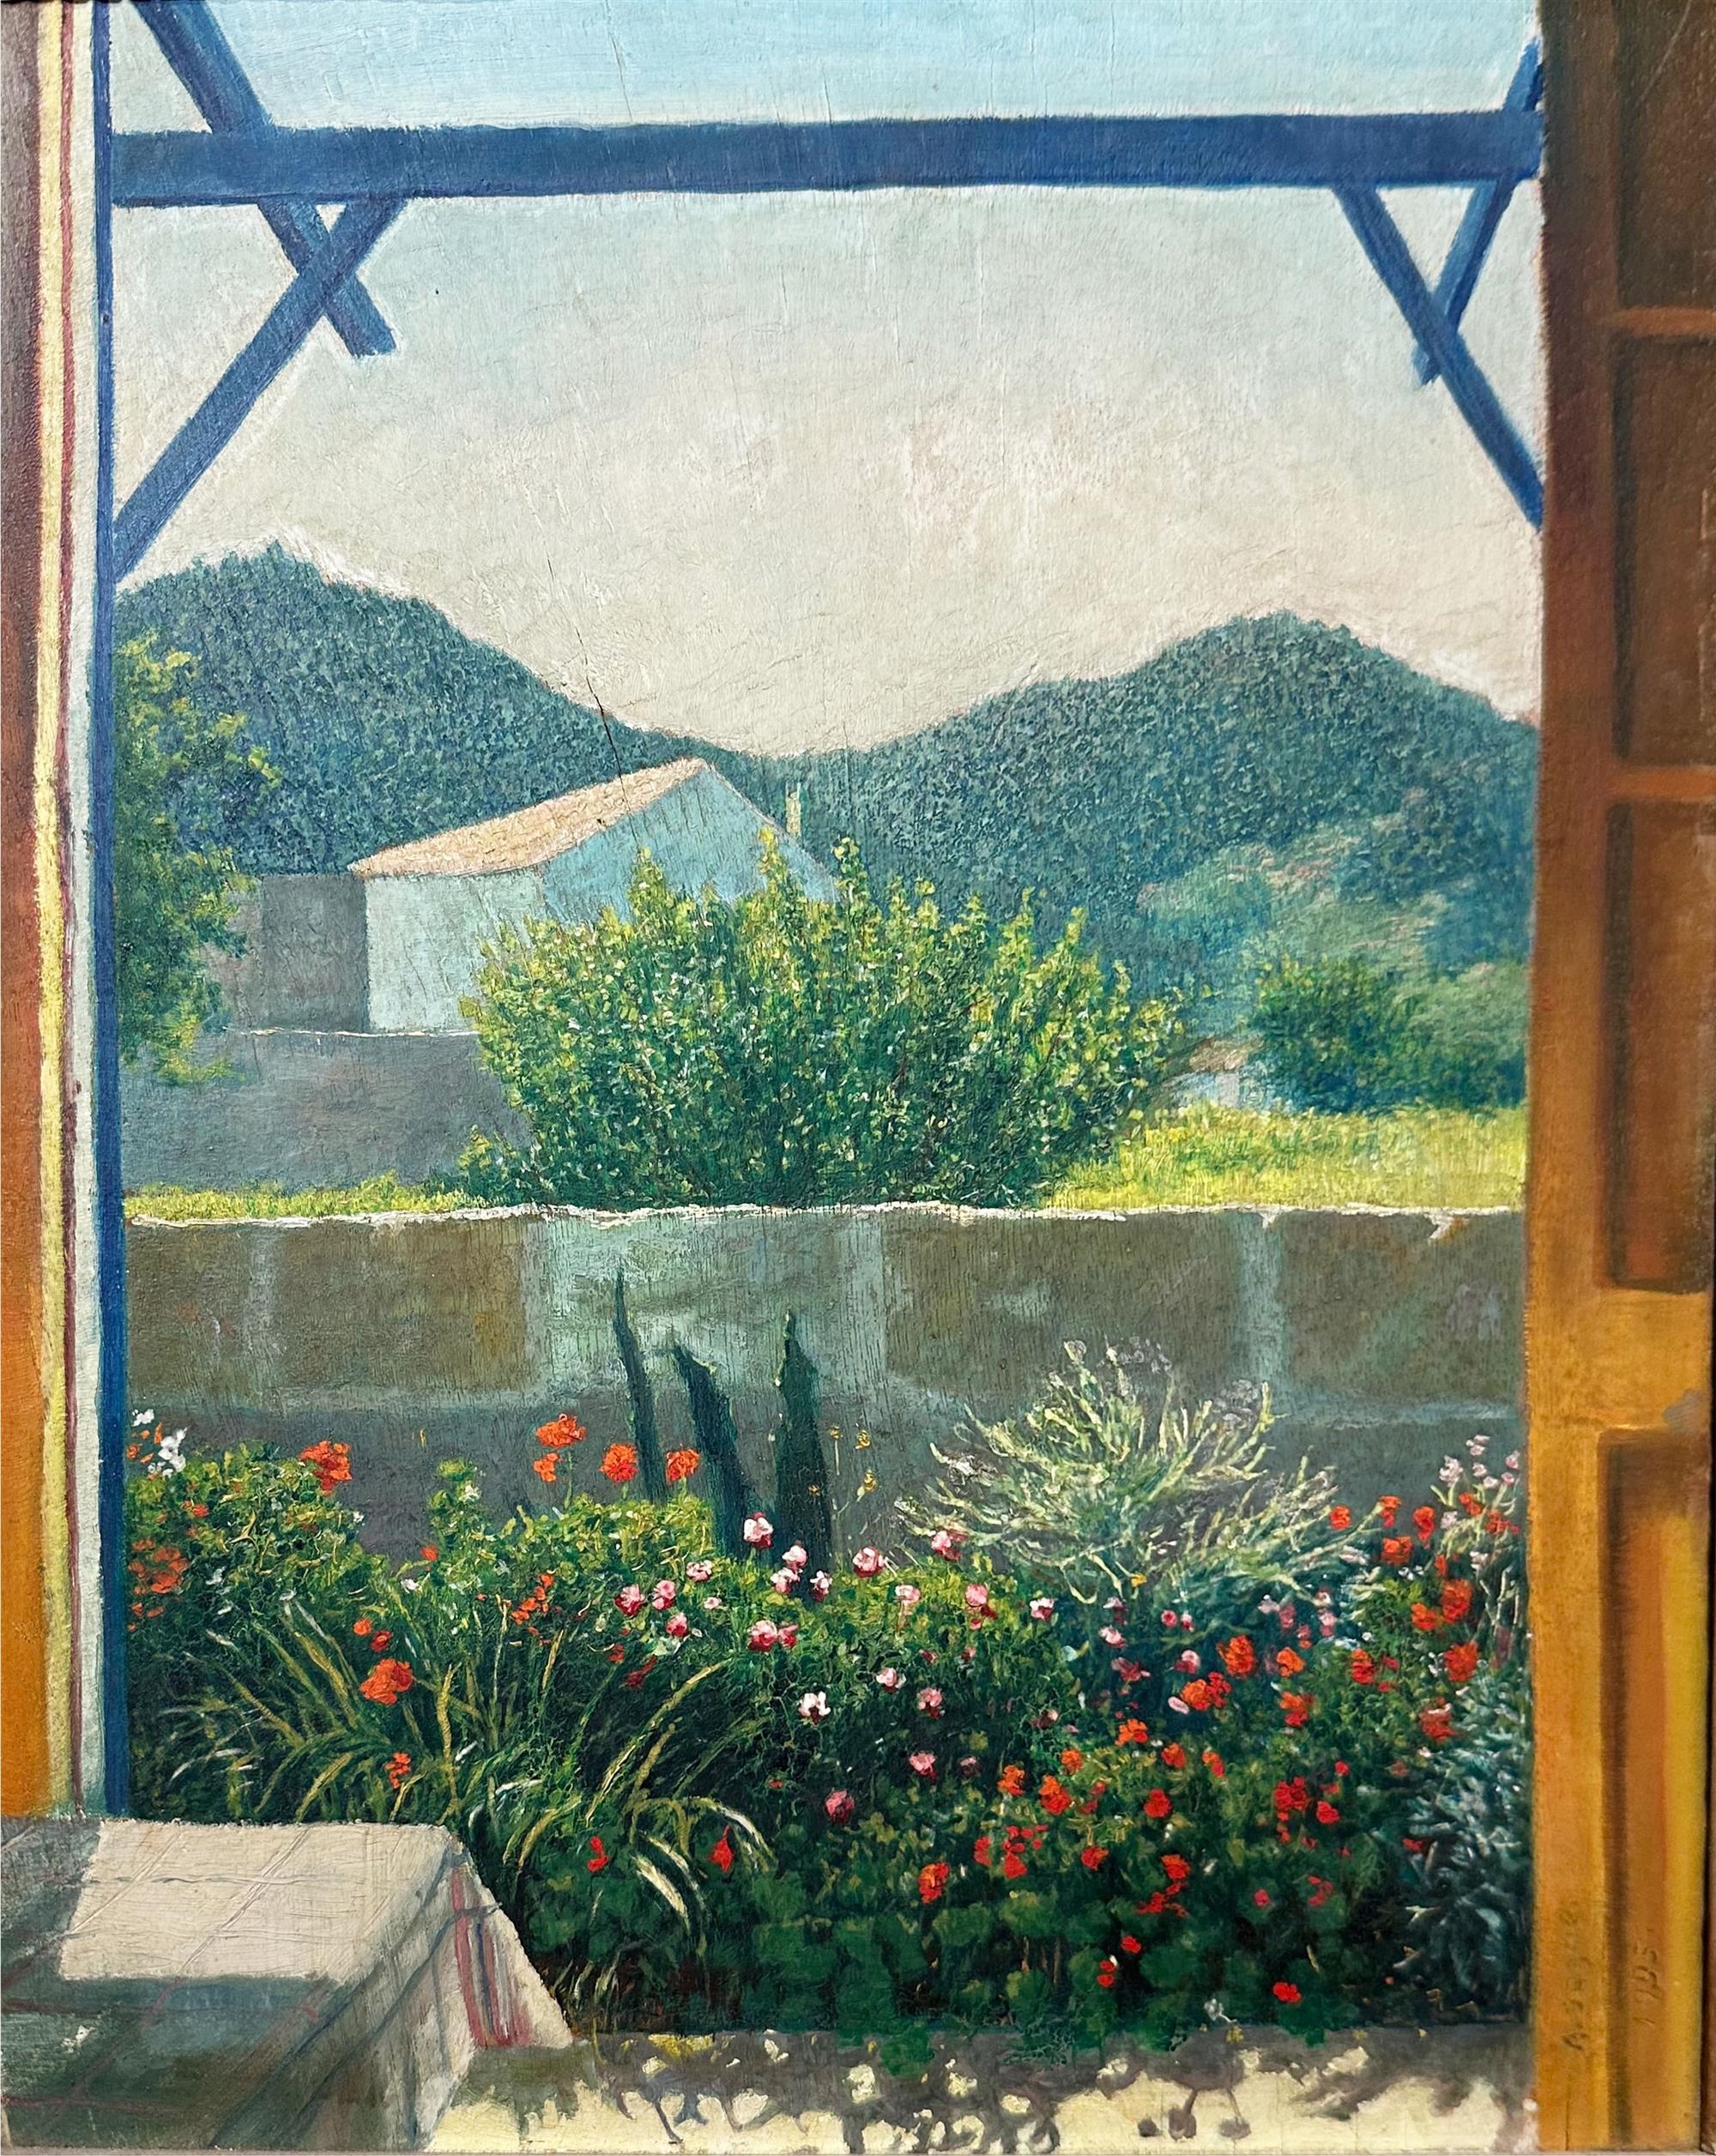 Palma de Mallorca, 1935 by Arthur Segal, 1935